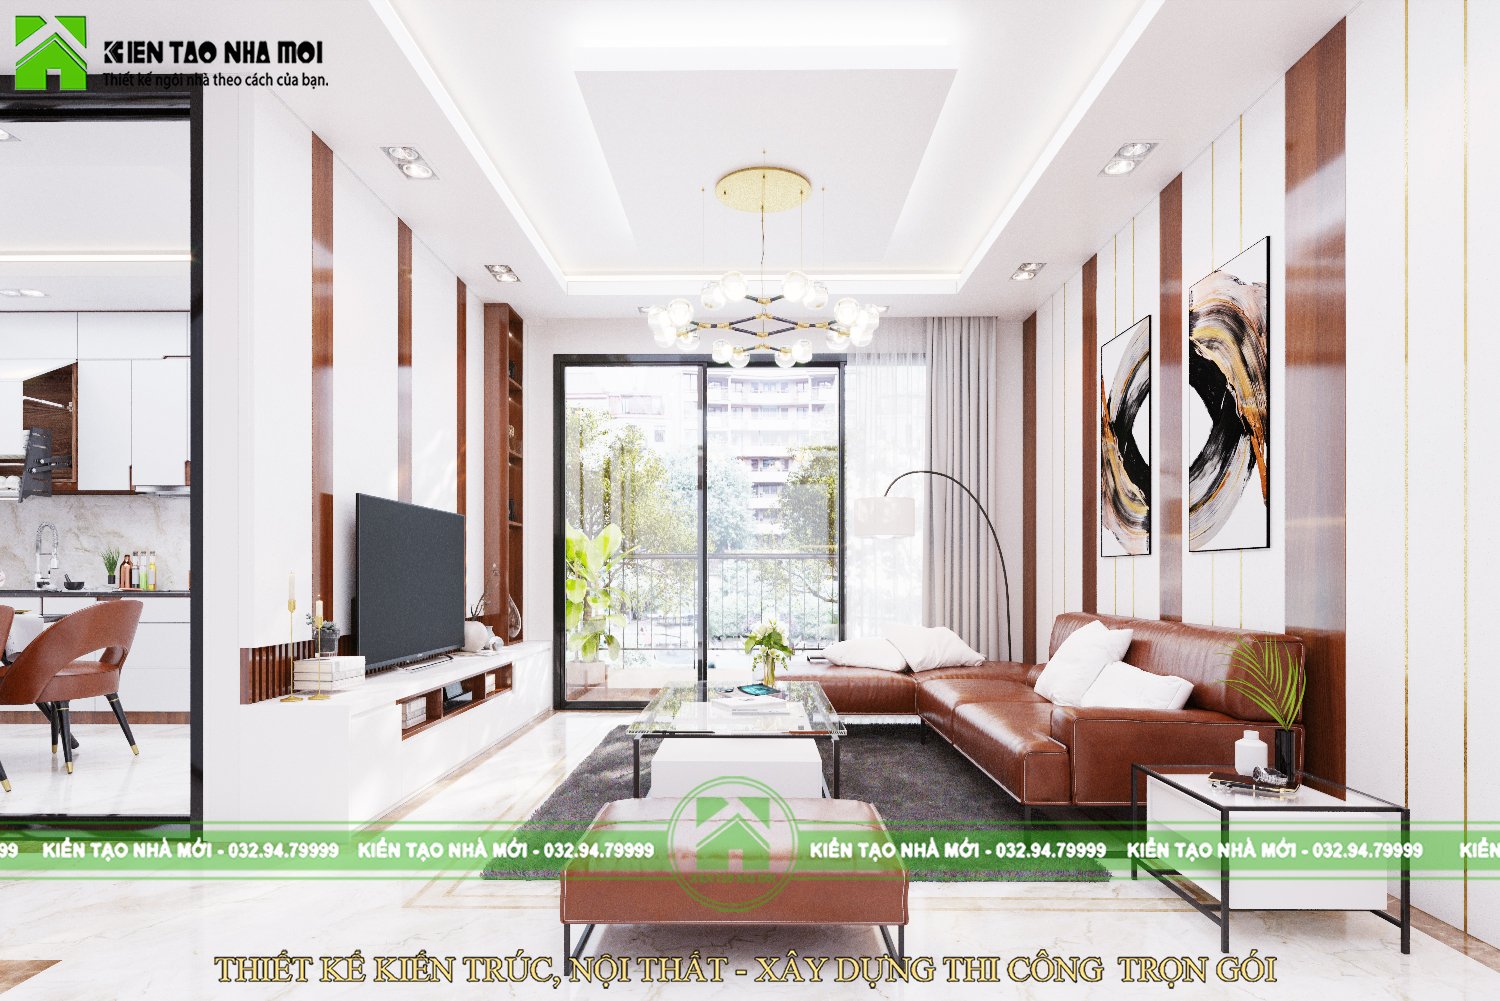 Thiết kế nội thất Biệt Thự tại Thái Nguyên Thiết kế nội thất nhà ở gia đình hiện đại tại Thái Nguyên 1587915120 5